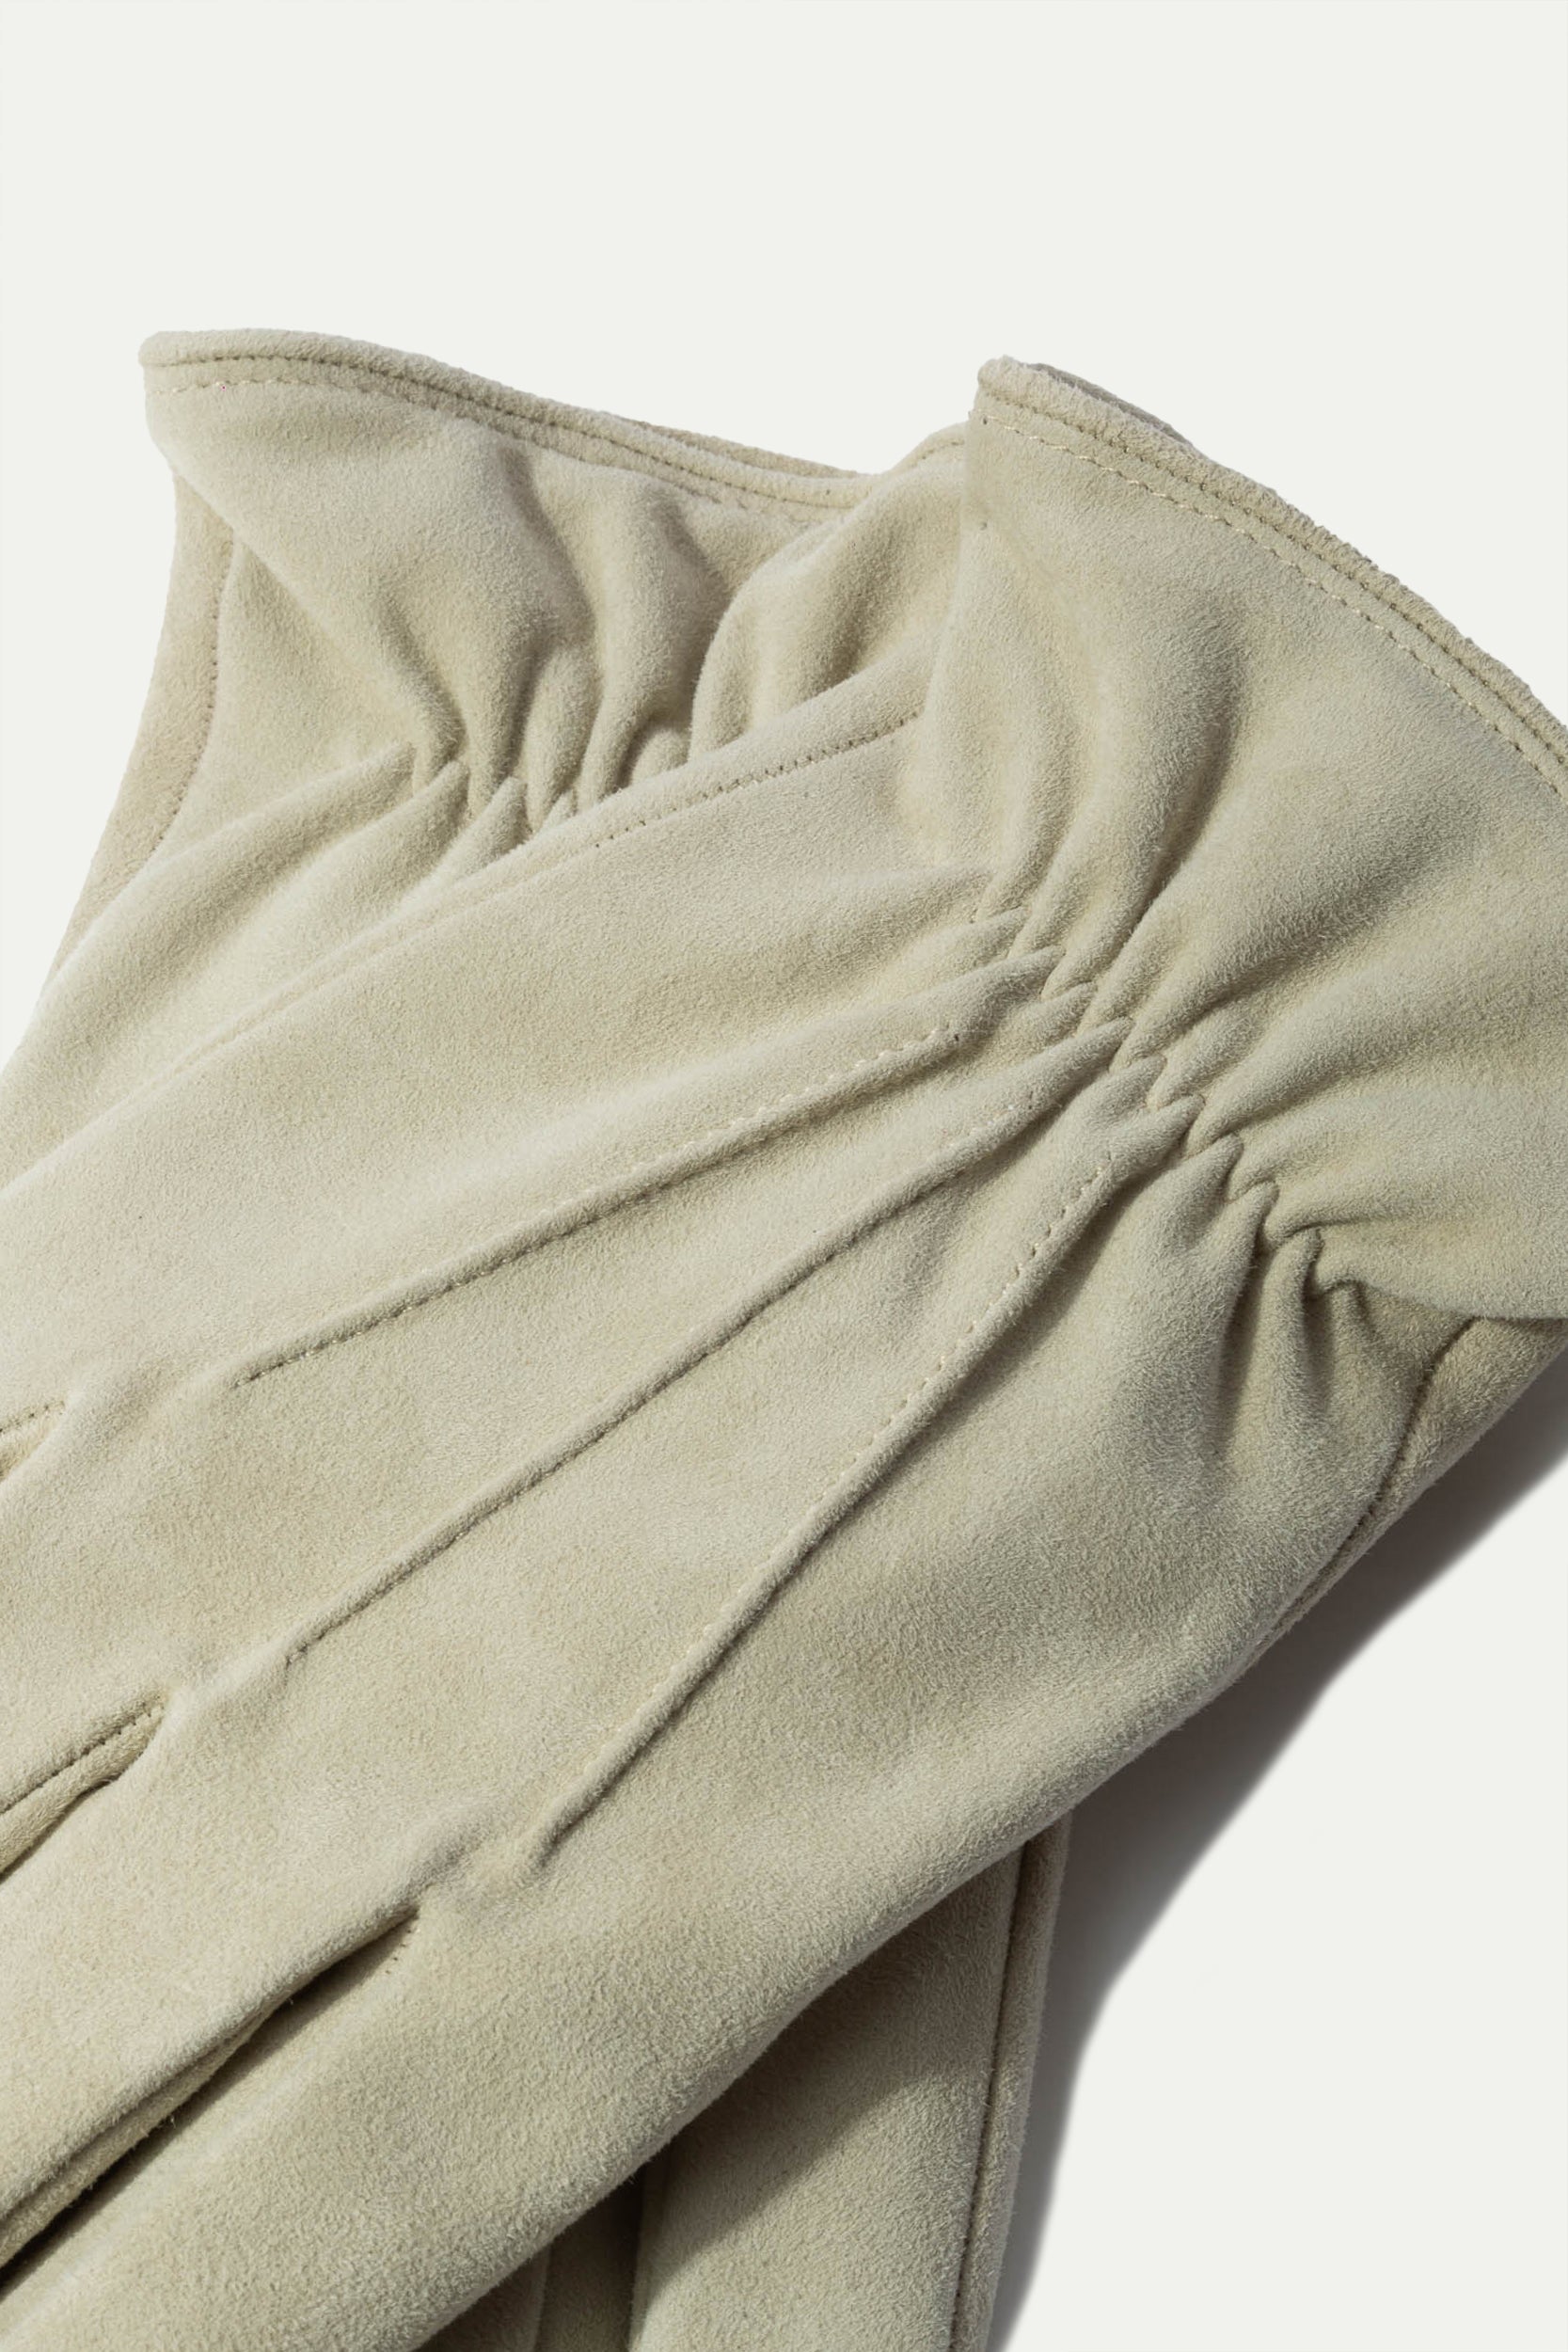 Guanti in pelle scamosciata foderati in cashmere sabbia - Made in Italy